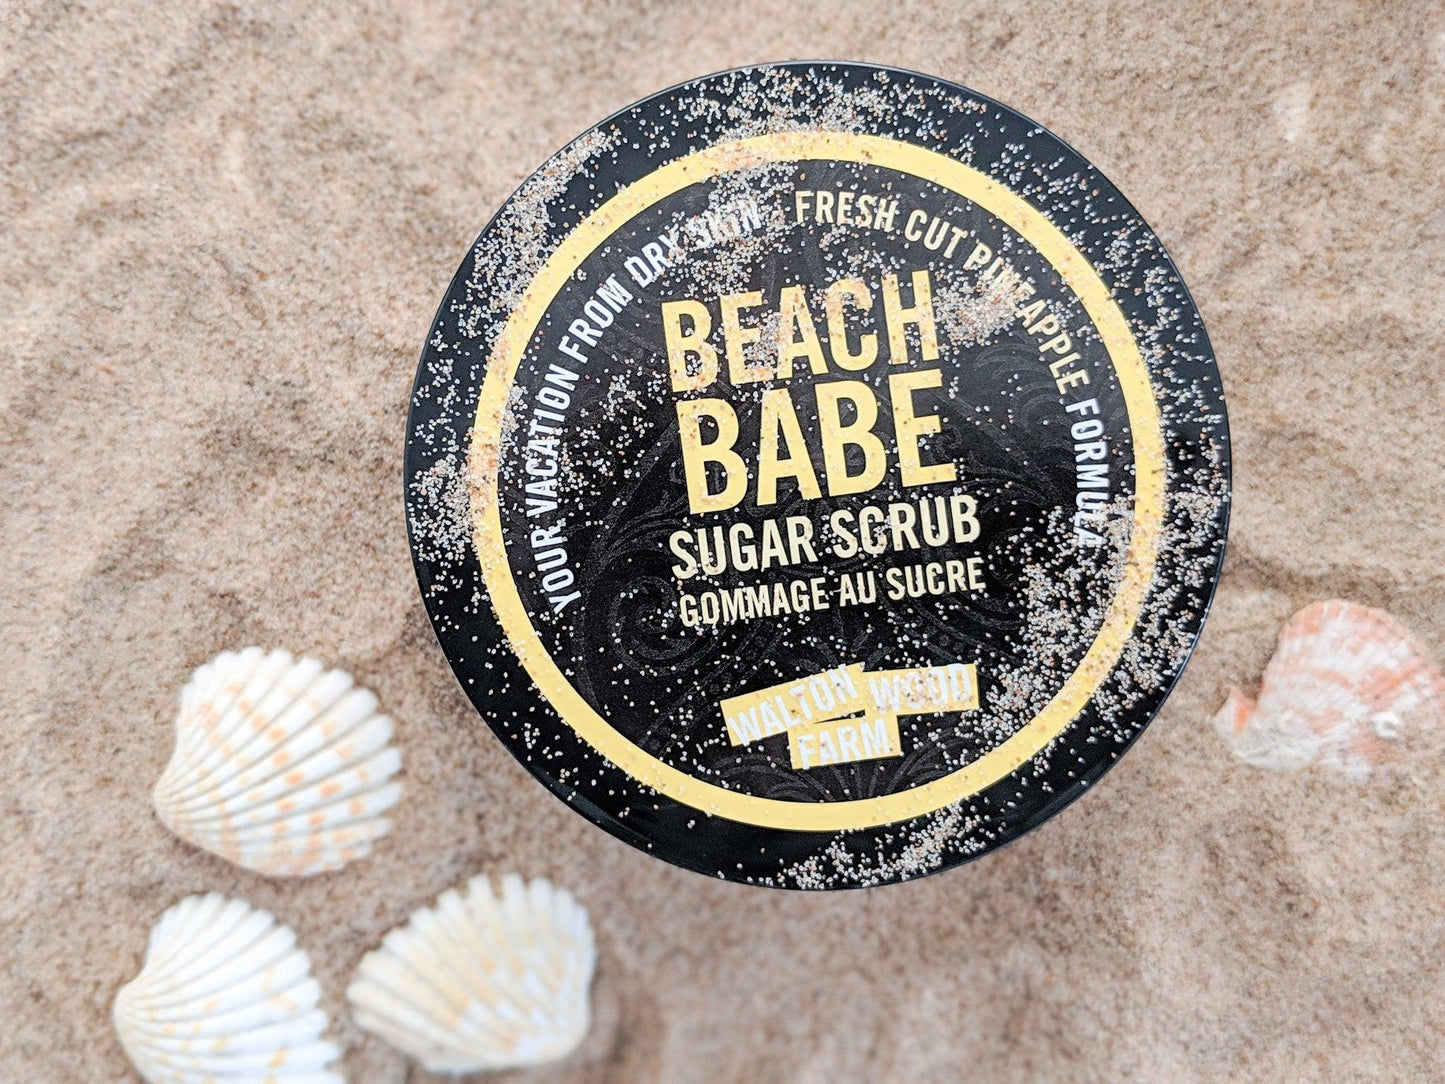 Beach Babe Real Sugar & Shea Scrub - Fresh Cut Pineapple - The Wandering Merchant